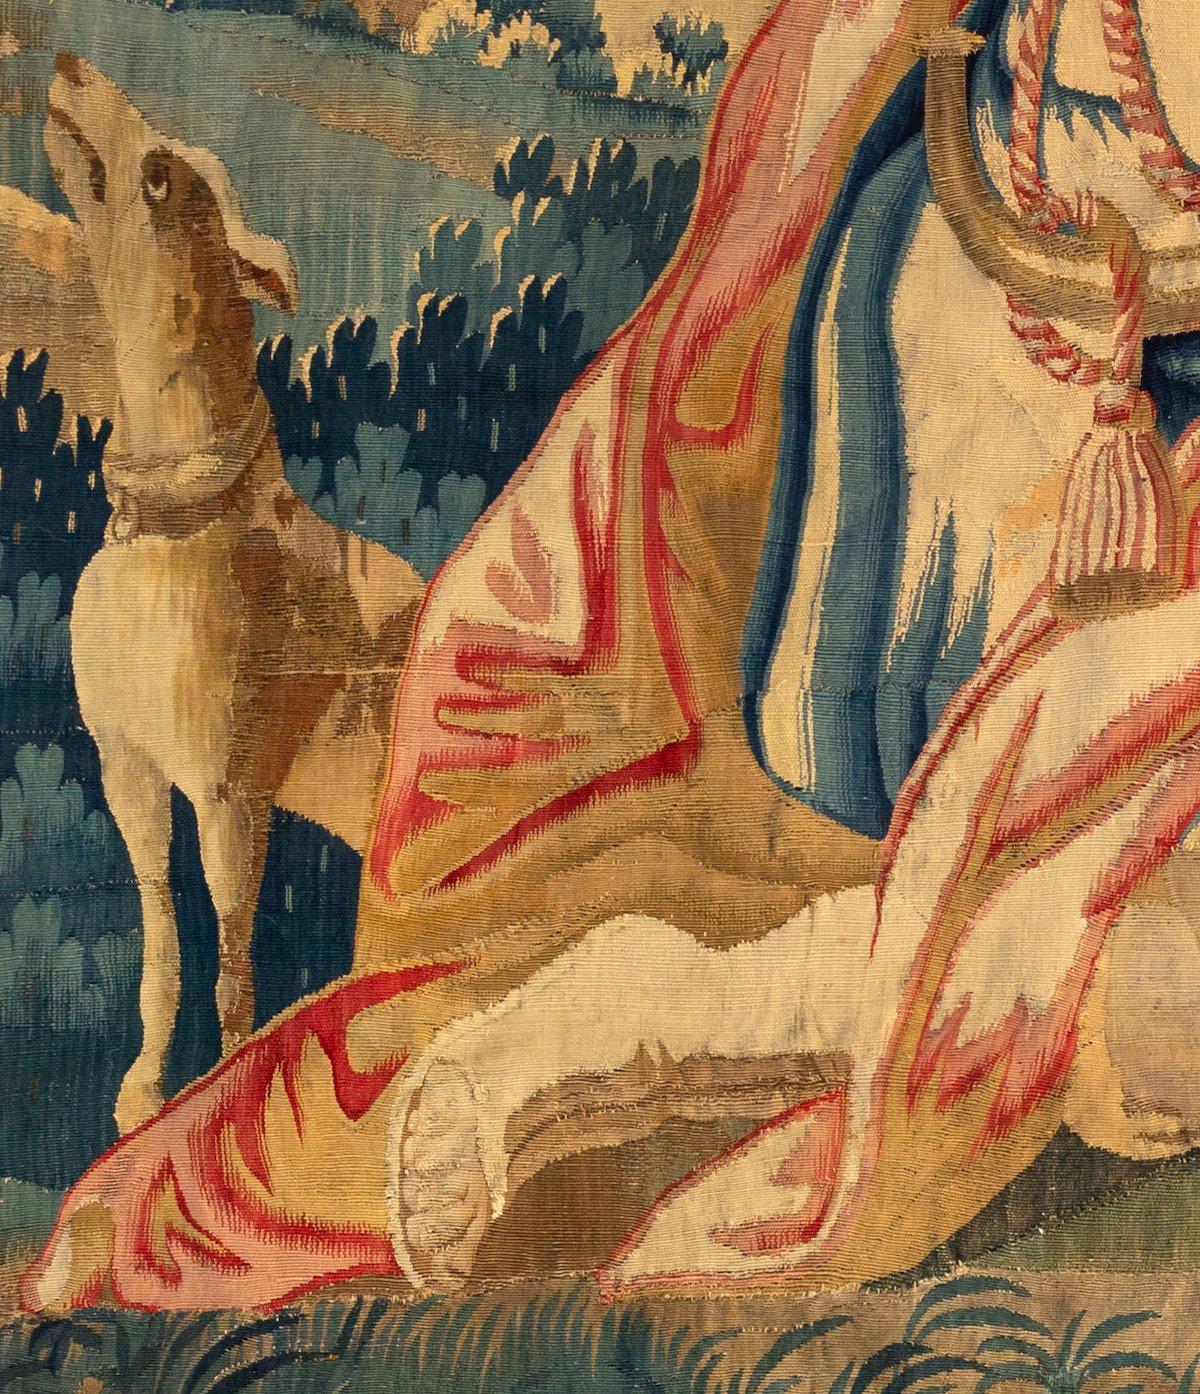 Les tapisseries étaient omniprésentes dans les châteaux et les églises de la fin du Moyen Âge et de la Renaissance. D'un point de vue pratique, ils constituaient une forme d'isolation et de décoration facilement transportable. En outre, le processus